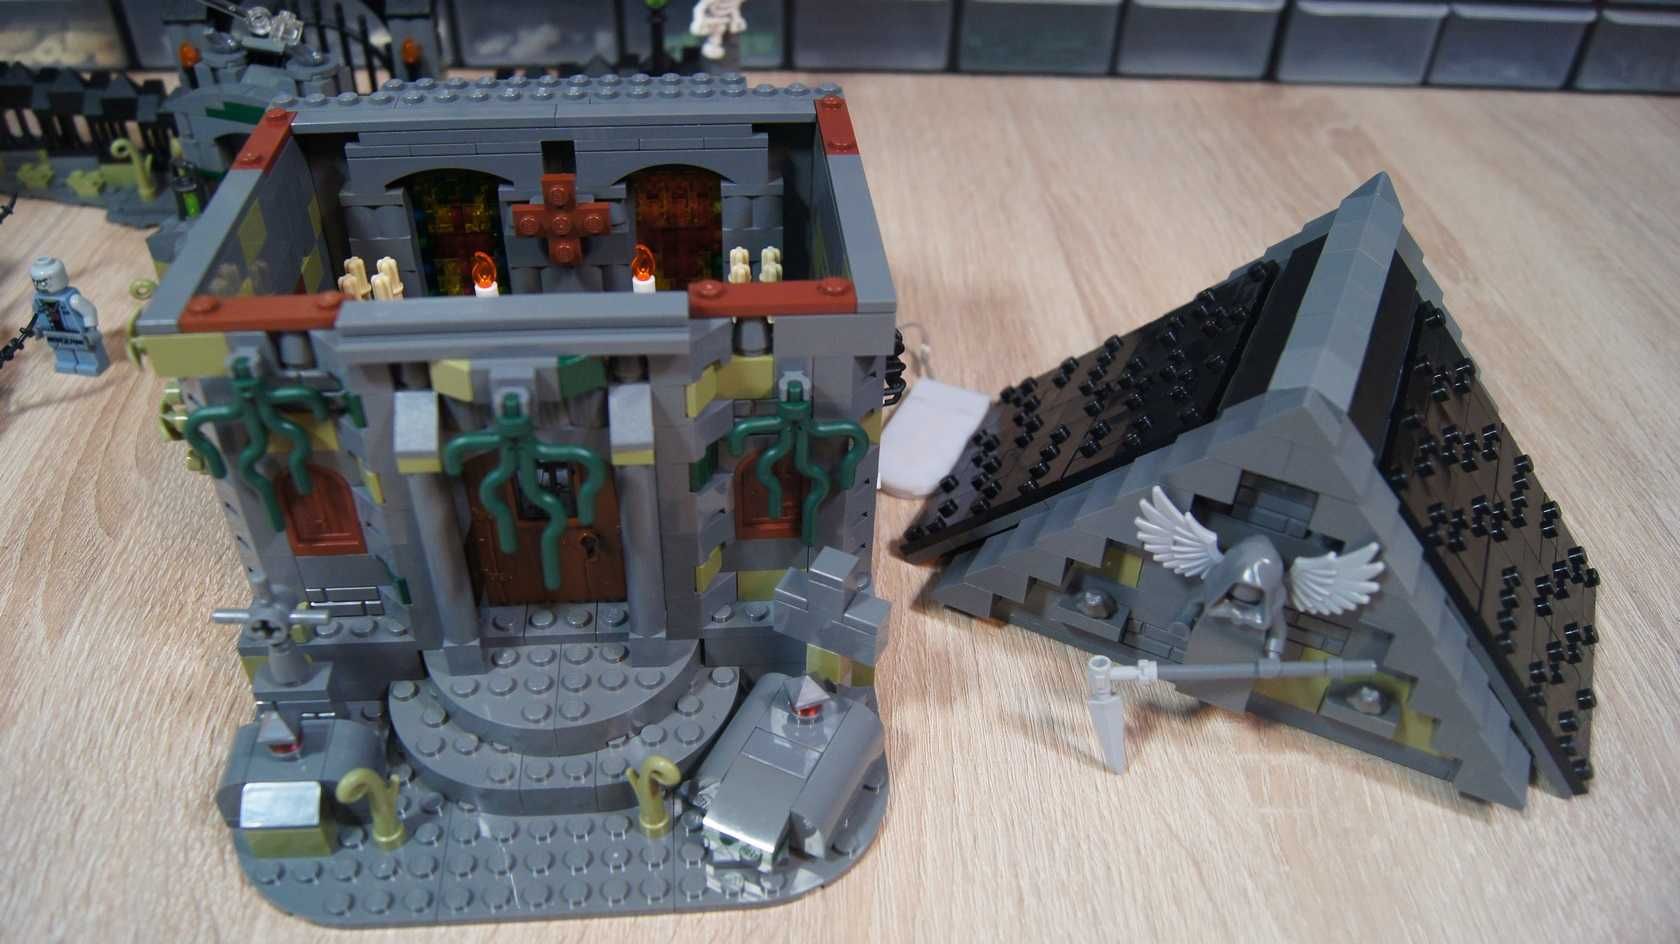 Lego Cmentarz MOC Halloween Graveyard krypta szkielet figurki kg